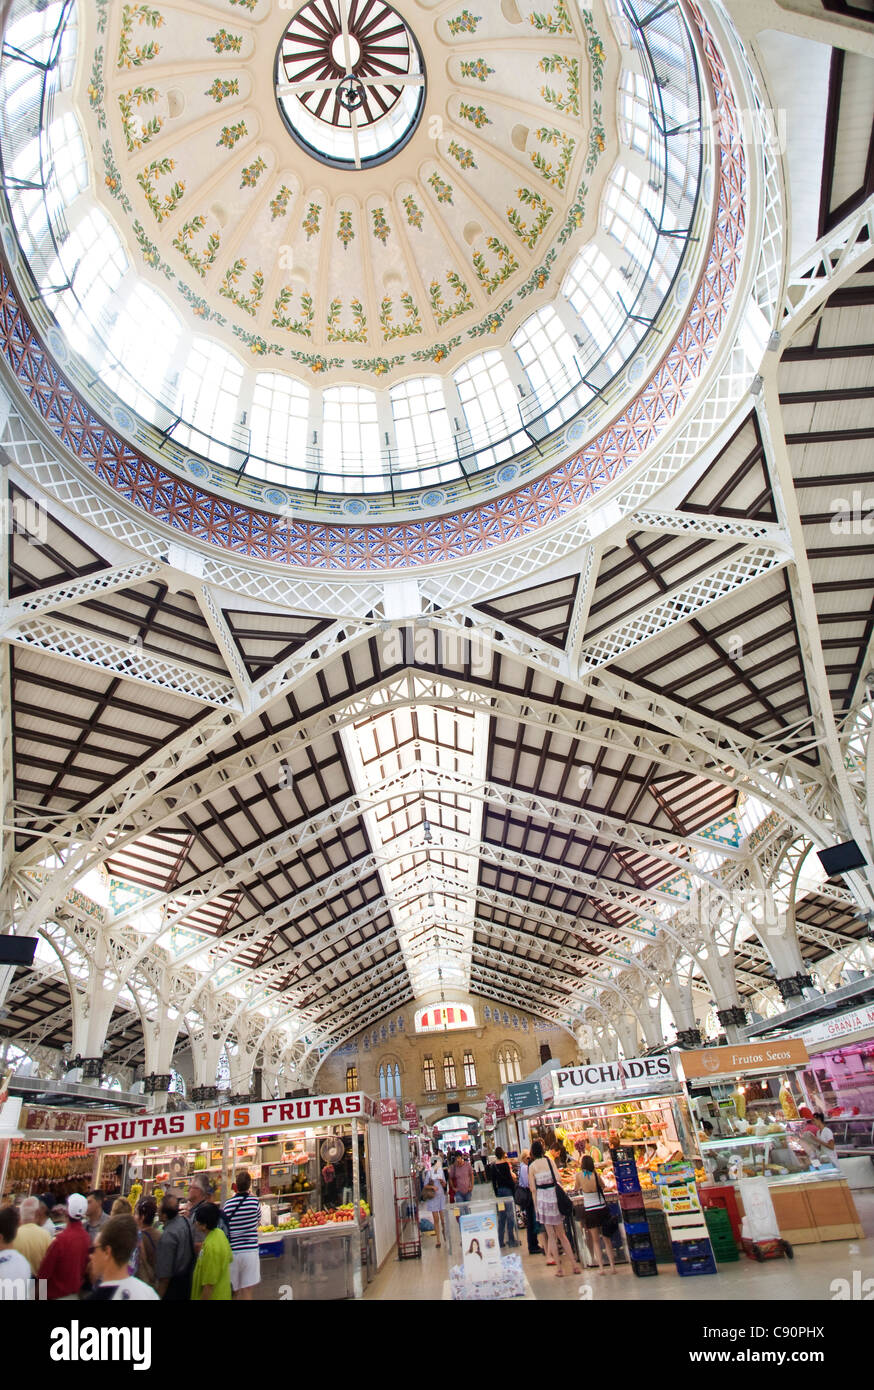 Interior of the Mercado Central, central market, Valencia, Spain Stock Photo